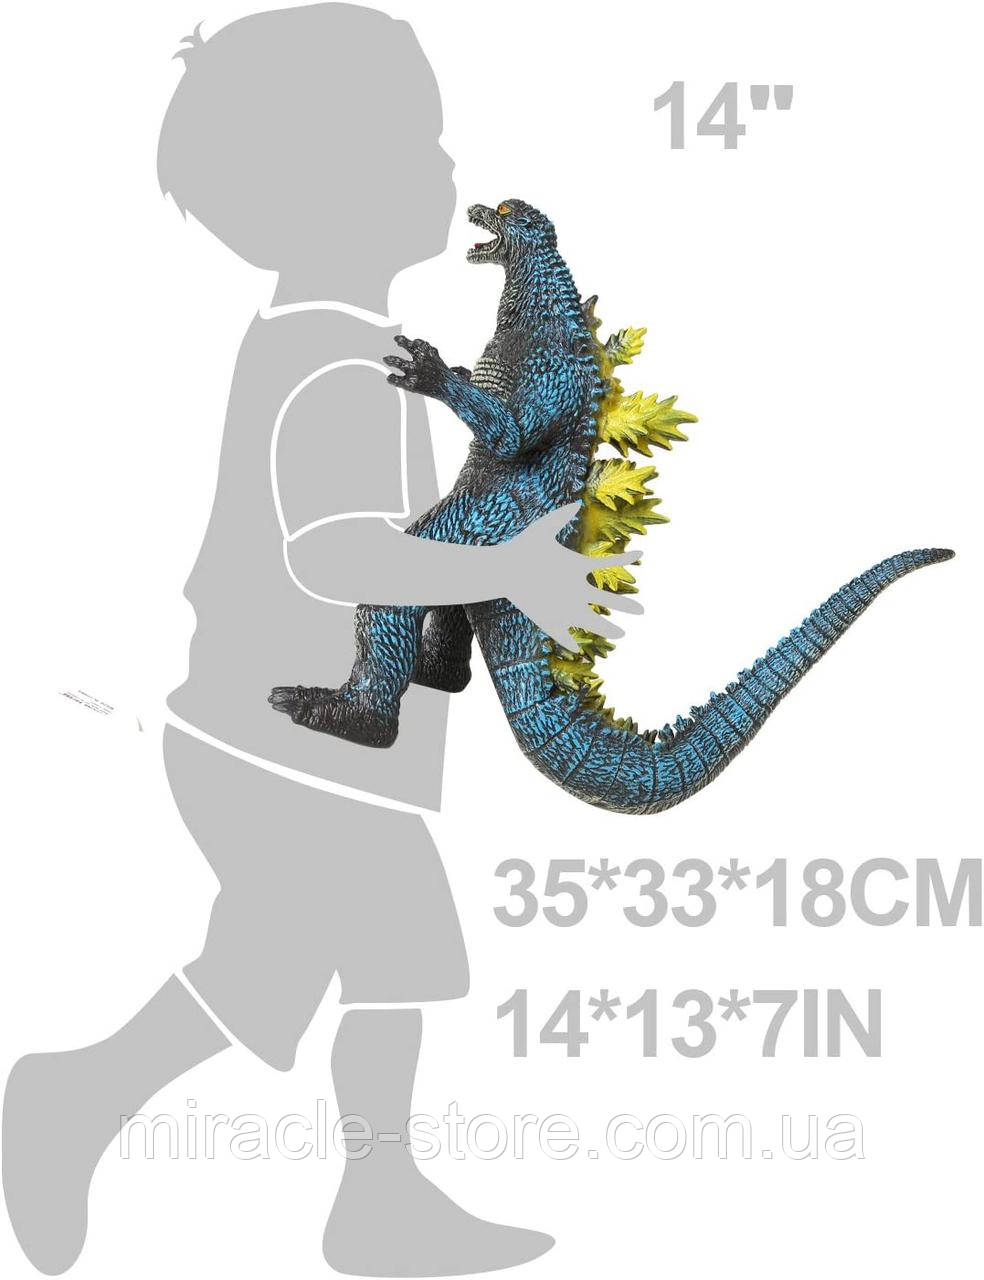 Дитяча ігрова фігурка Godzilla